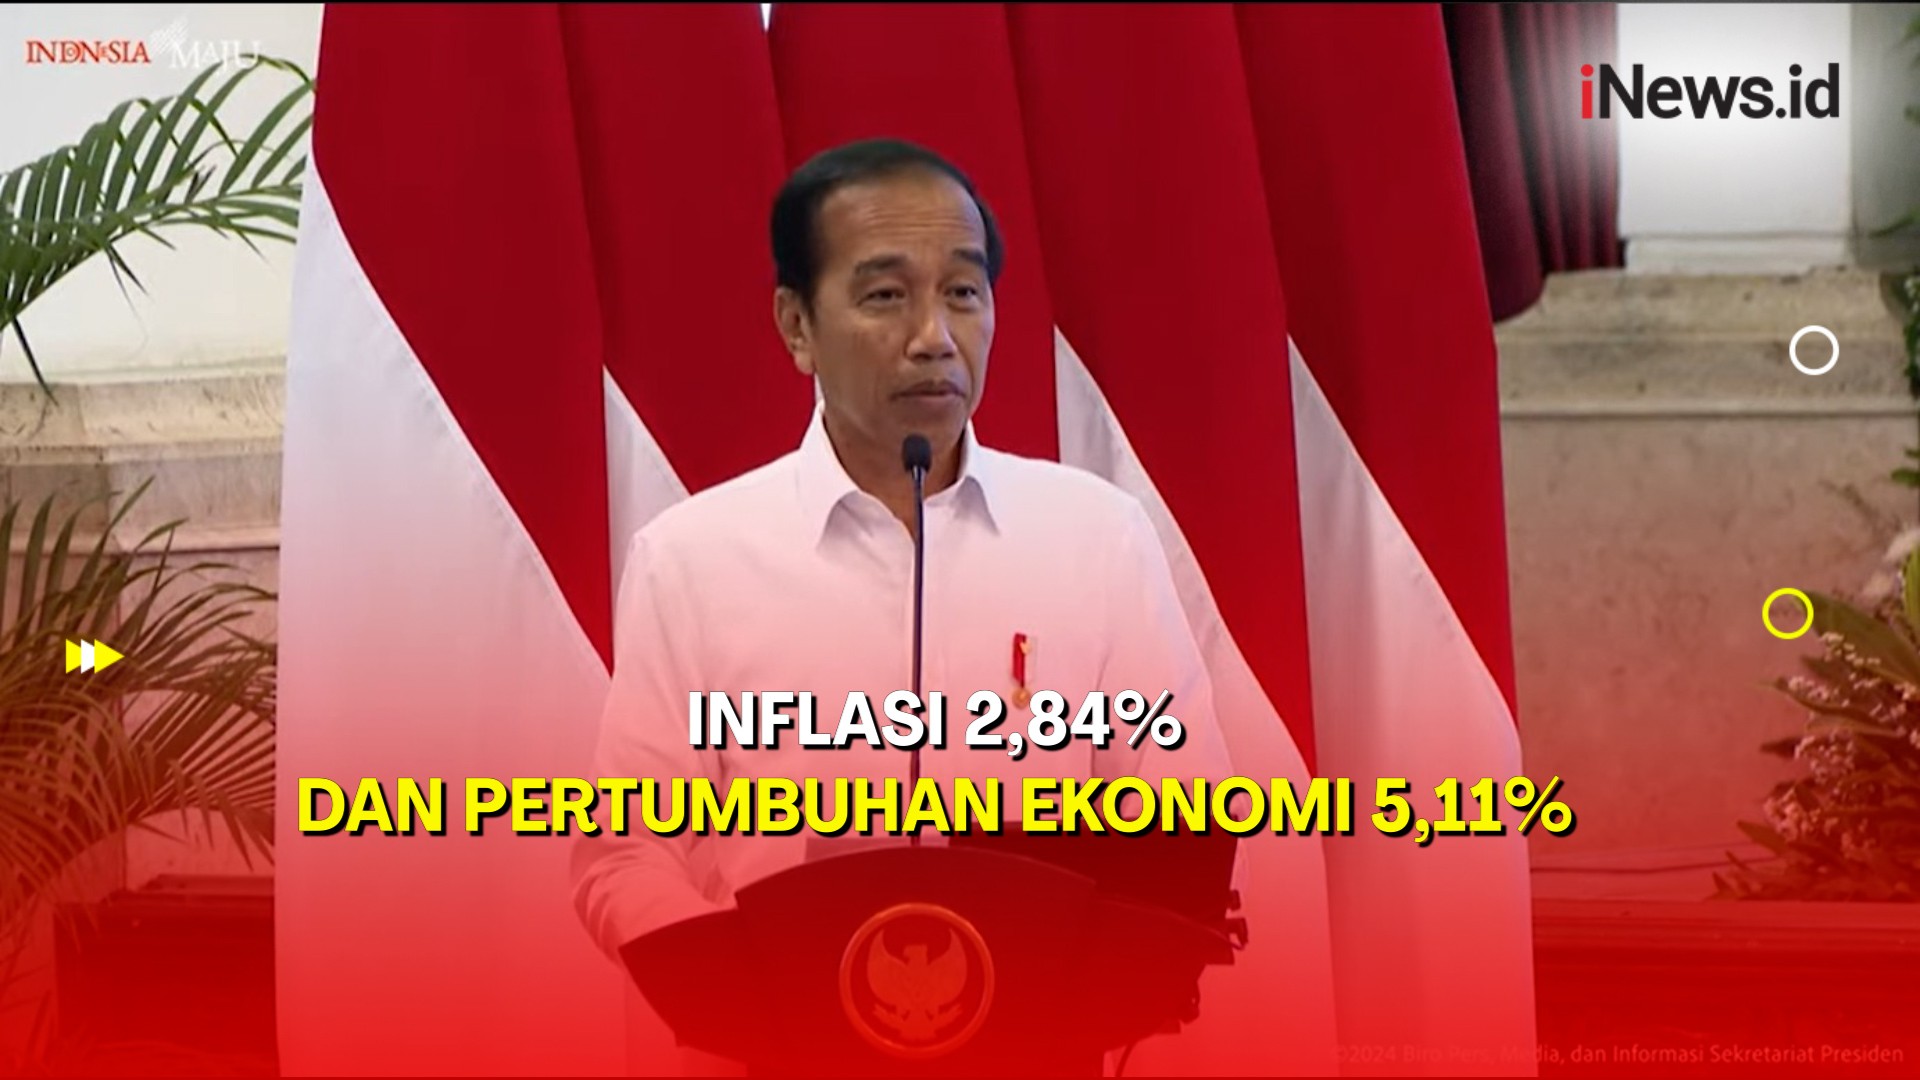 Senangnya Jokowi Inflasi 2,84% dan Pertumbuhan Ekonomi 5,11%,